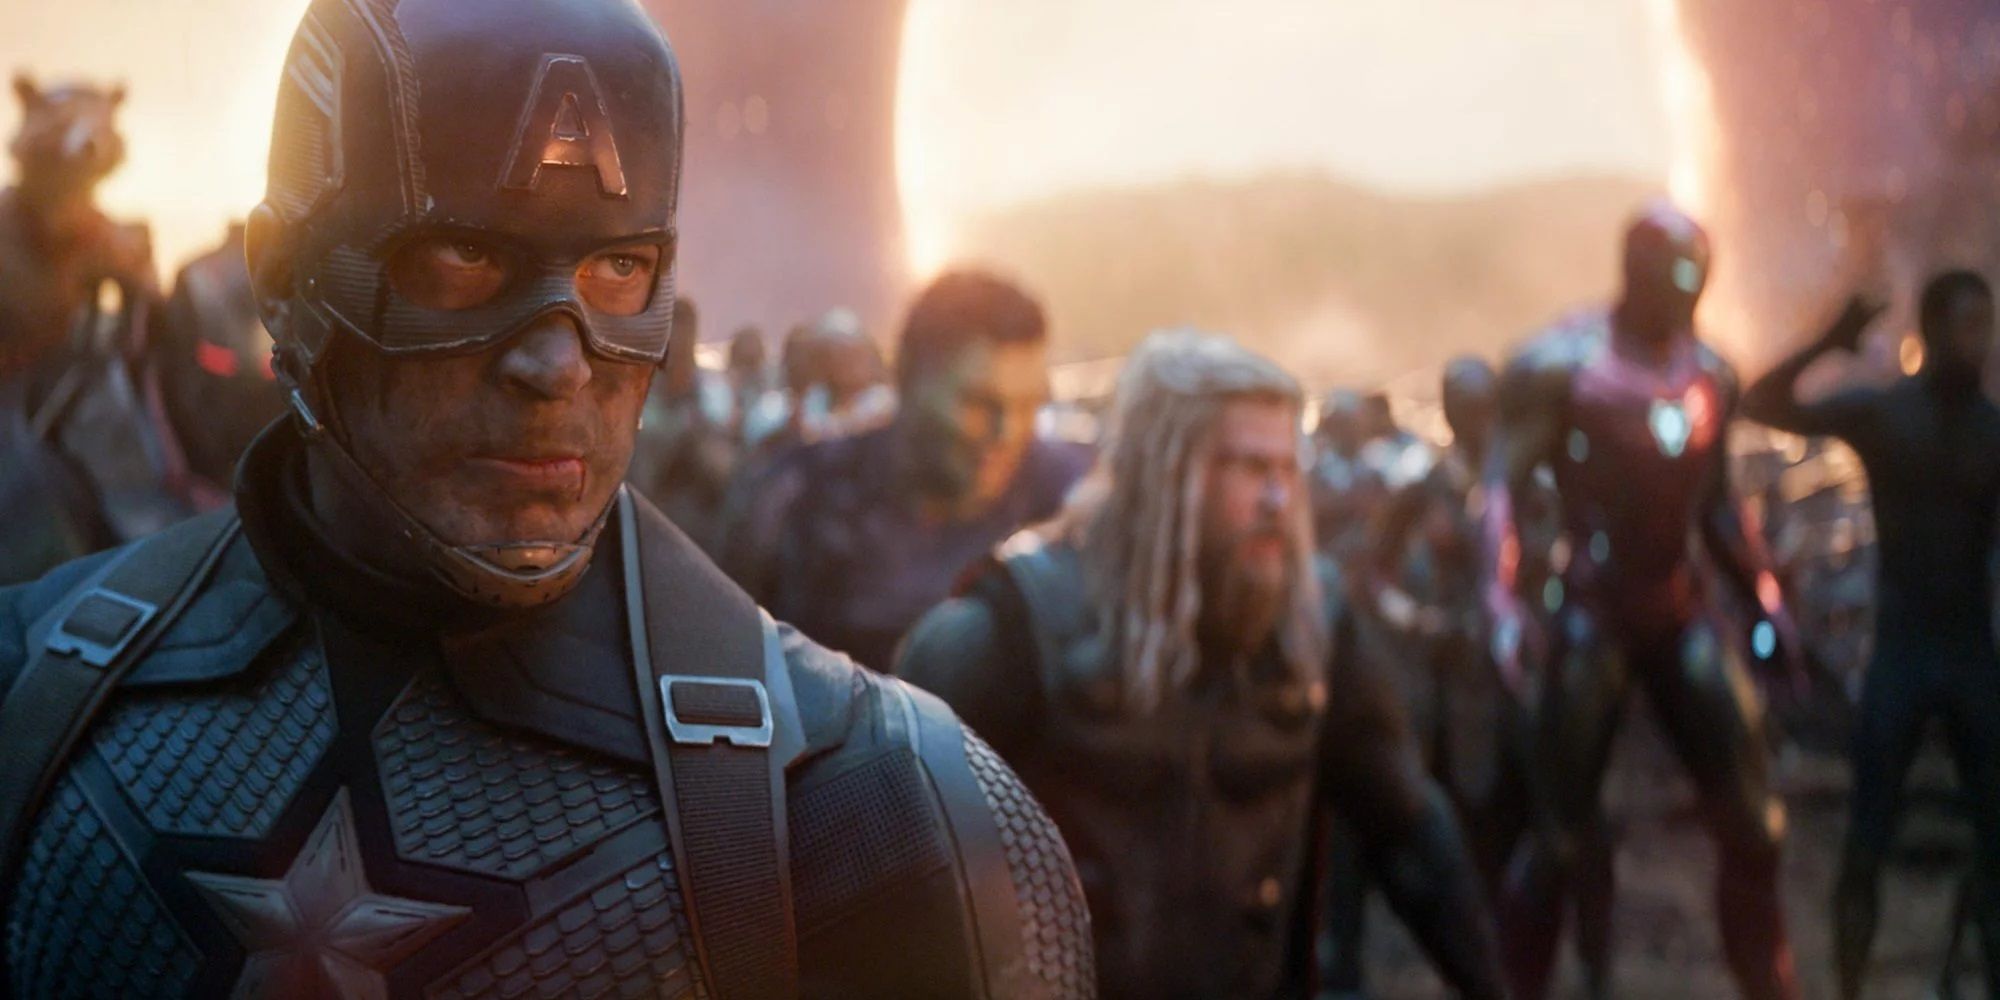 Captain America in Avengers Endgame